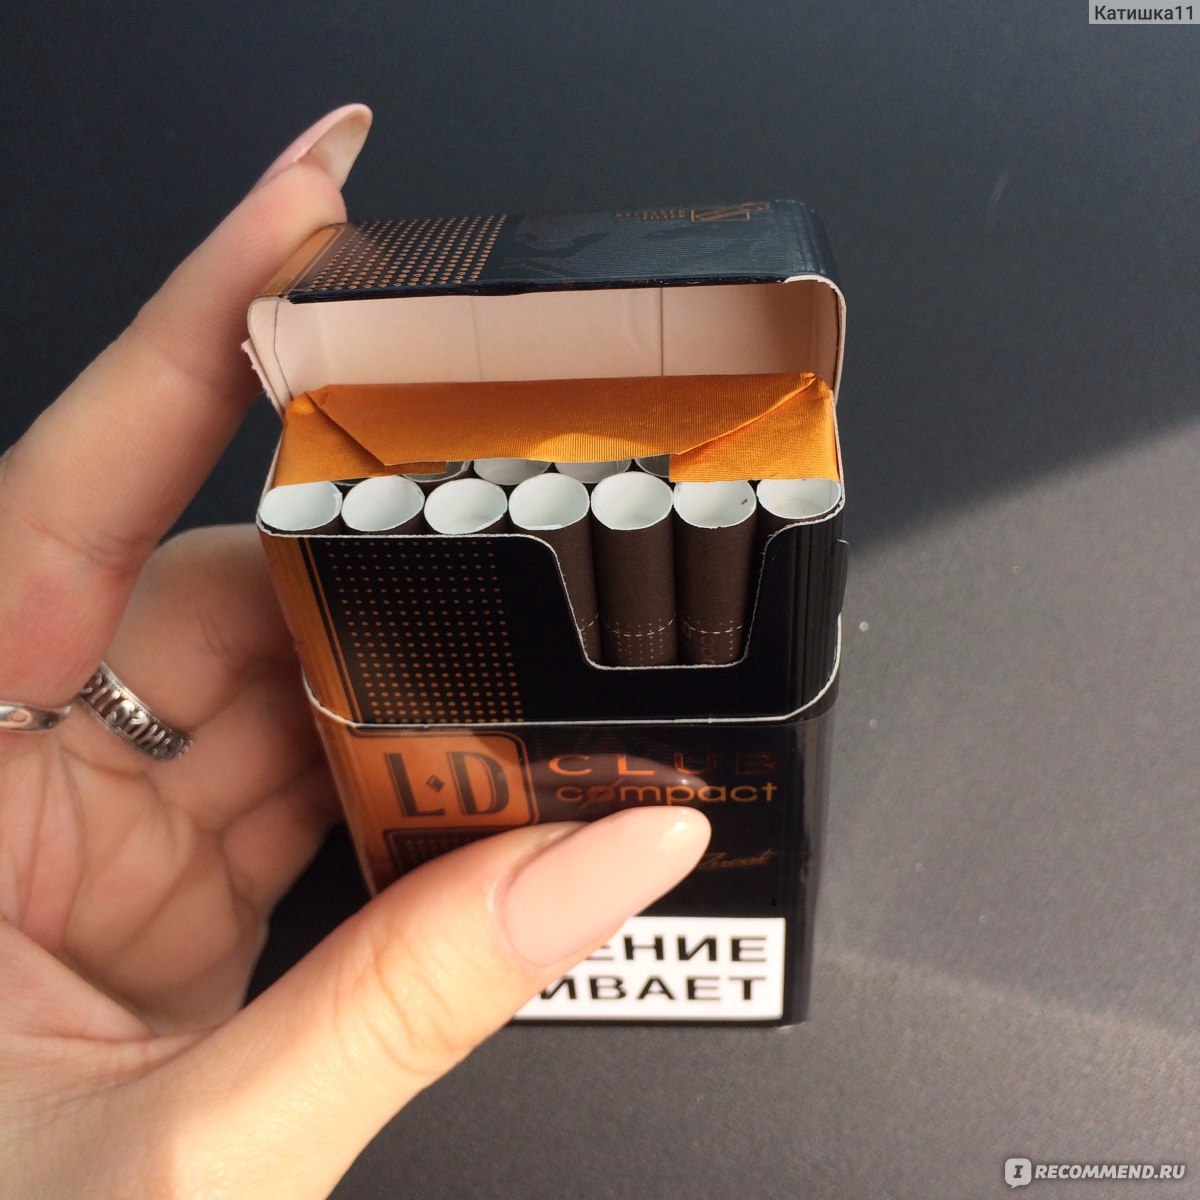 Лд коричневые сигареты. Japan Tobacco сигареты. LD шоколадные сигареты. Коричневые сигареты. Сигареты коричневые тонкие.